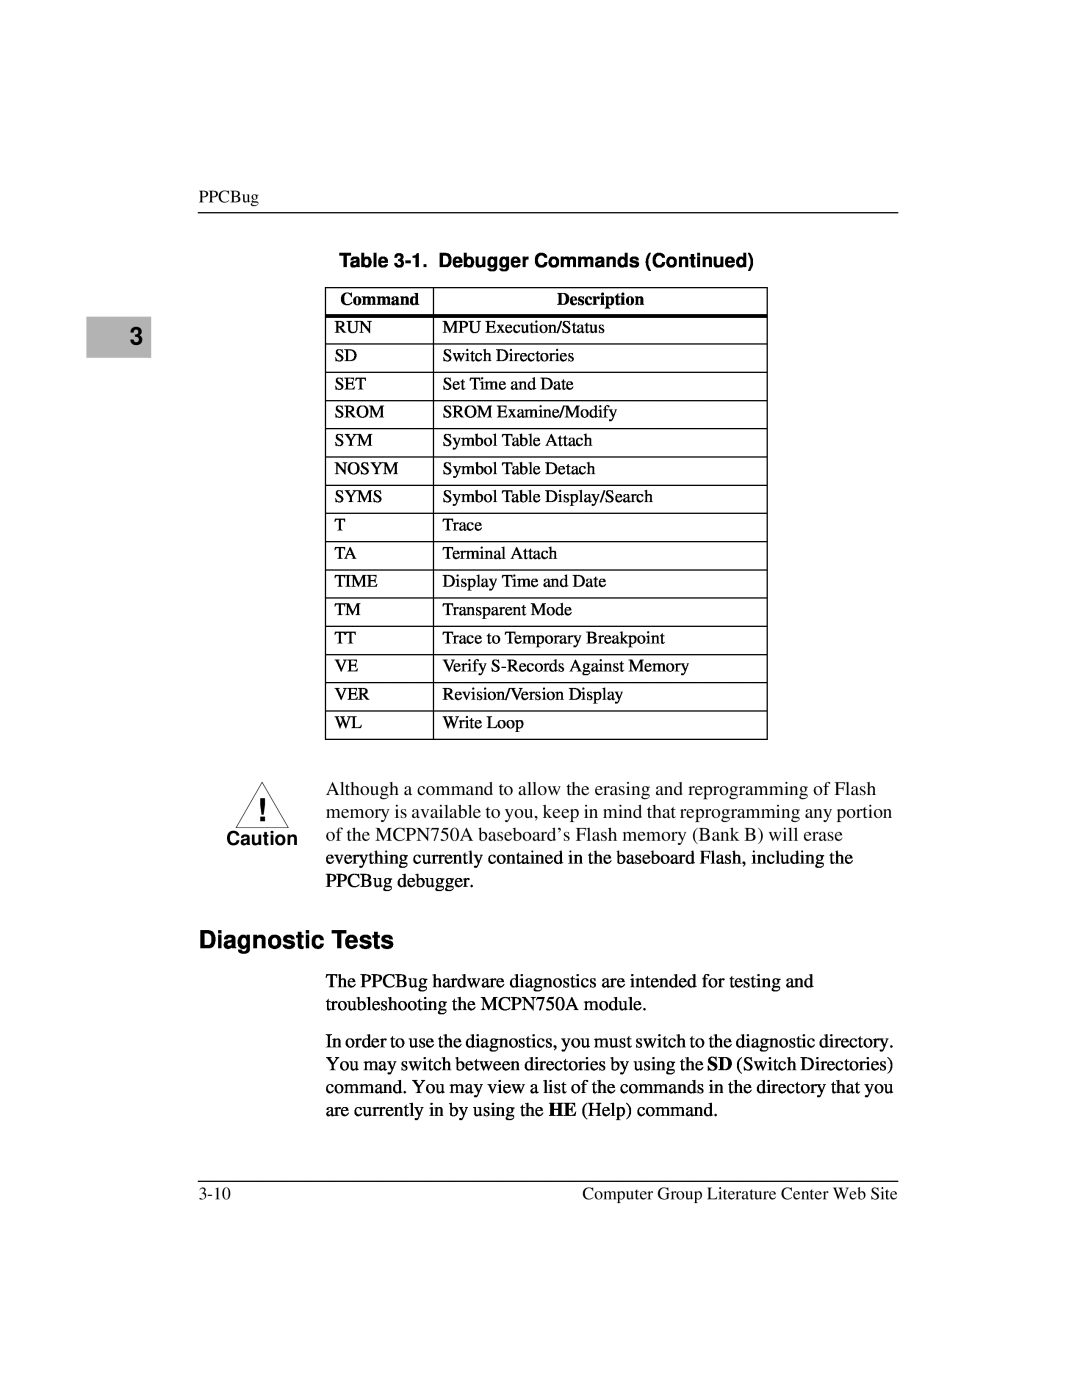 Motorola MCPN750A, IH5 manual Diagnostic Tests, 1. Debugger Commands Continued 